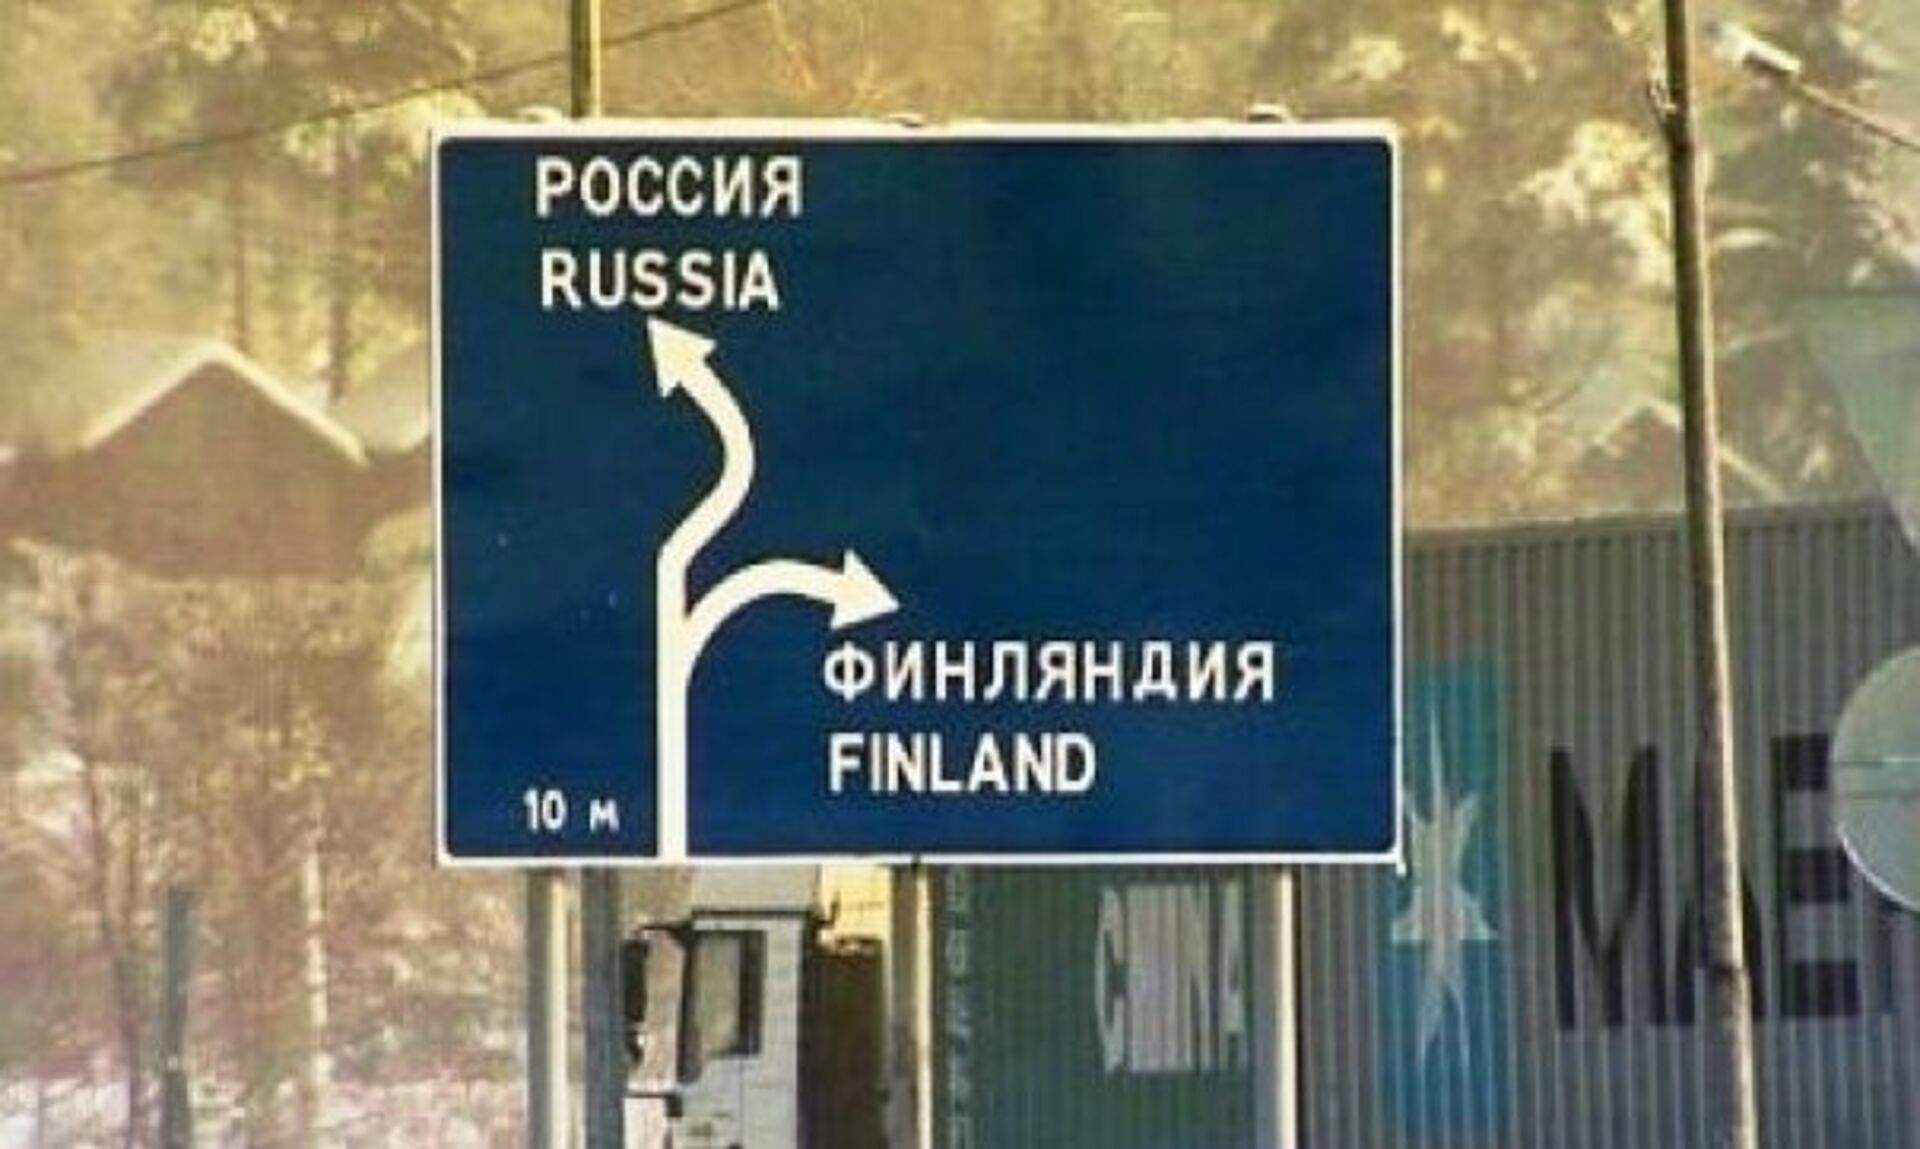 Украина финляндия границы с россией